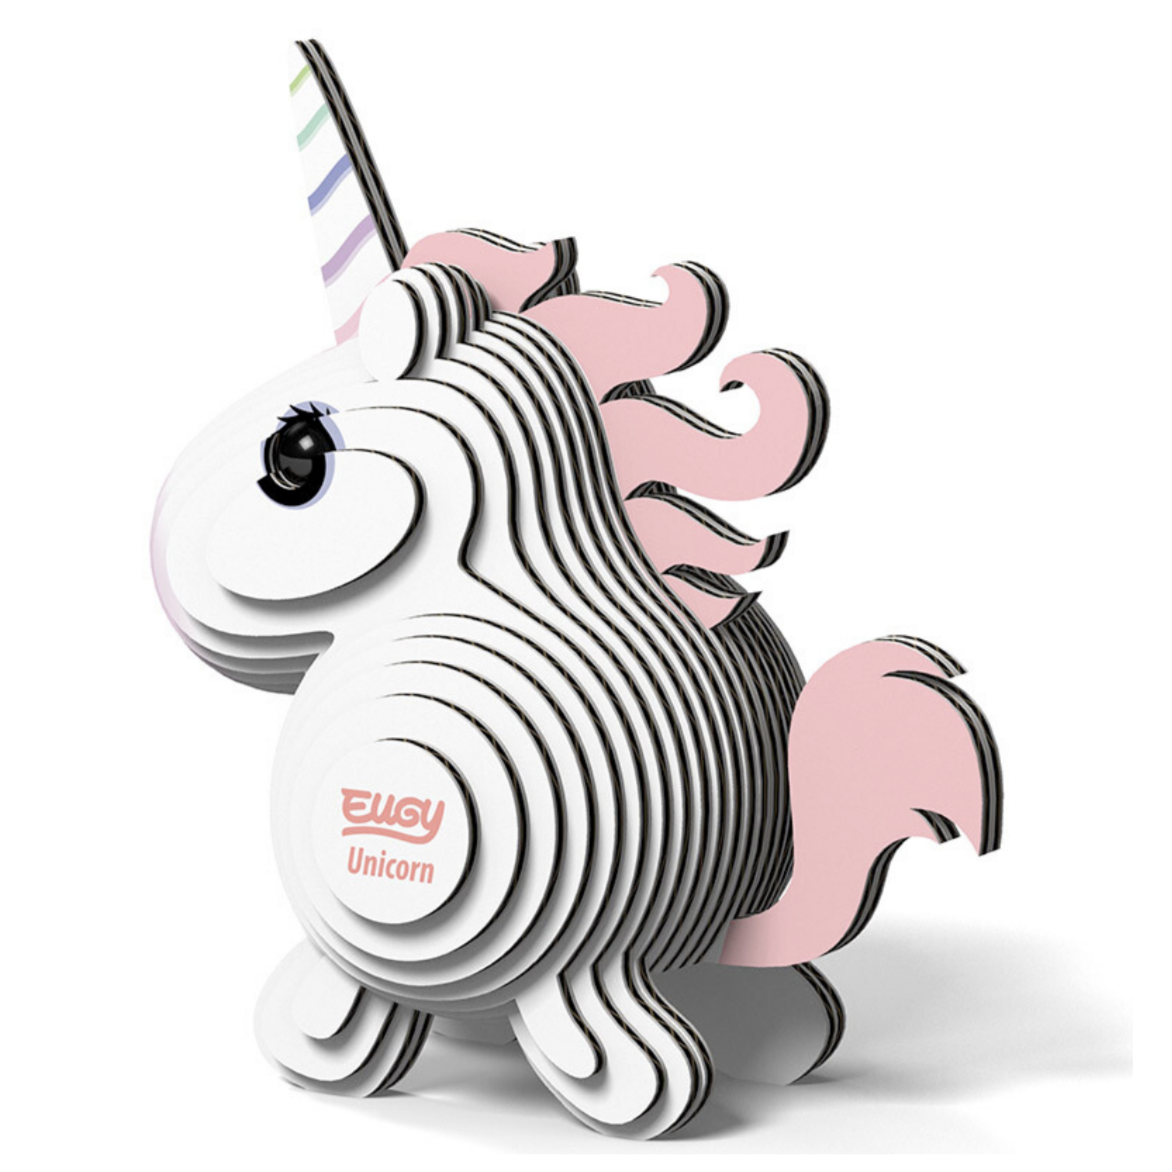 Unicorn 3-D model kit (6-14yrs)